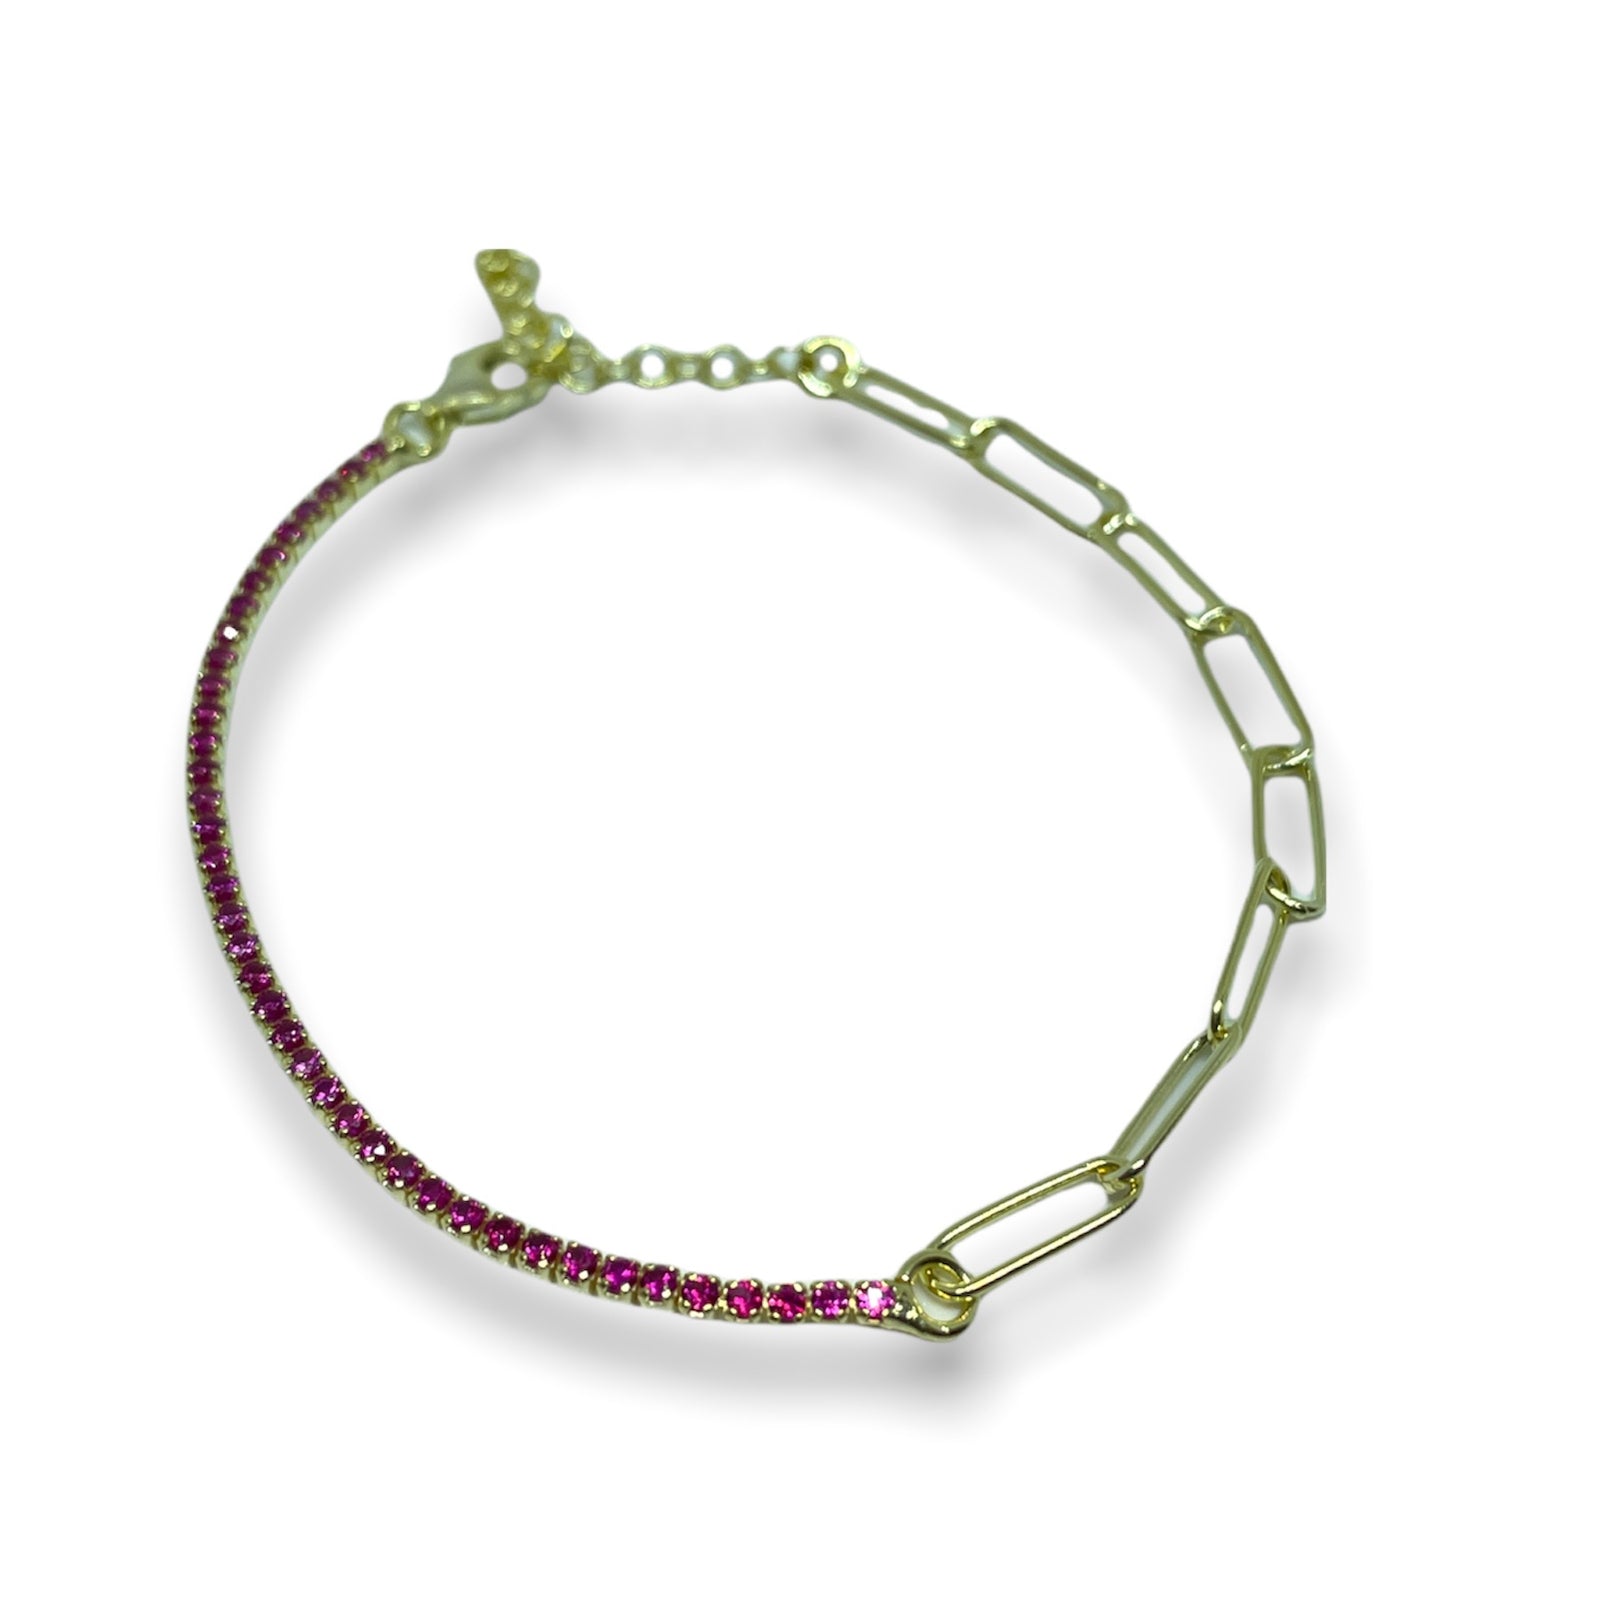 Mixed tennis bracelet